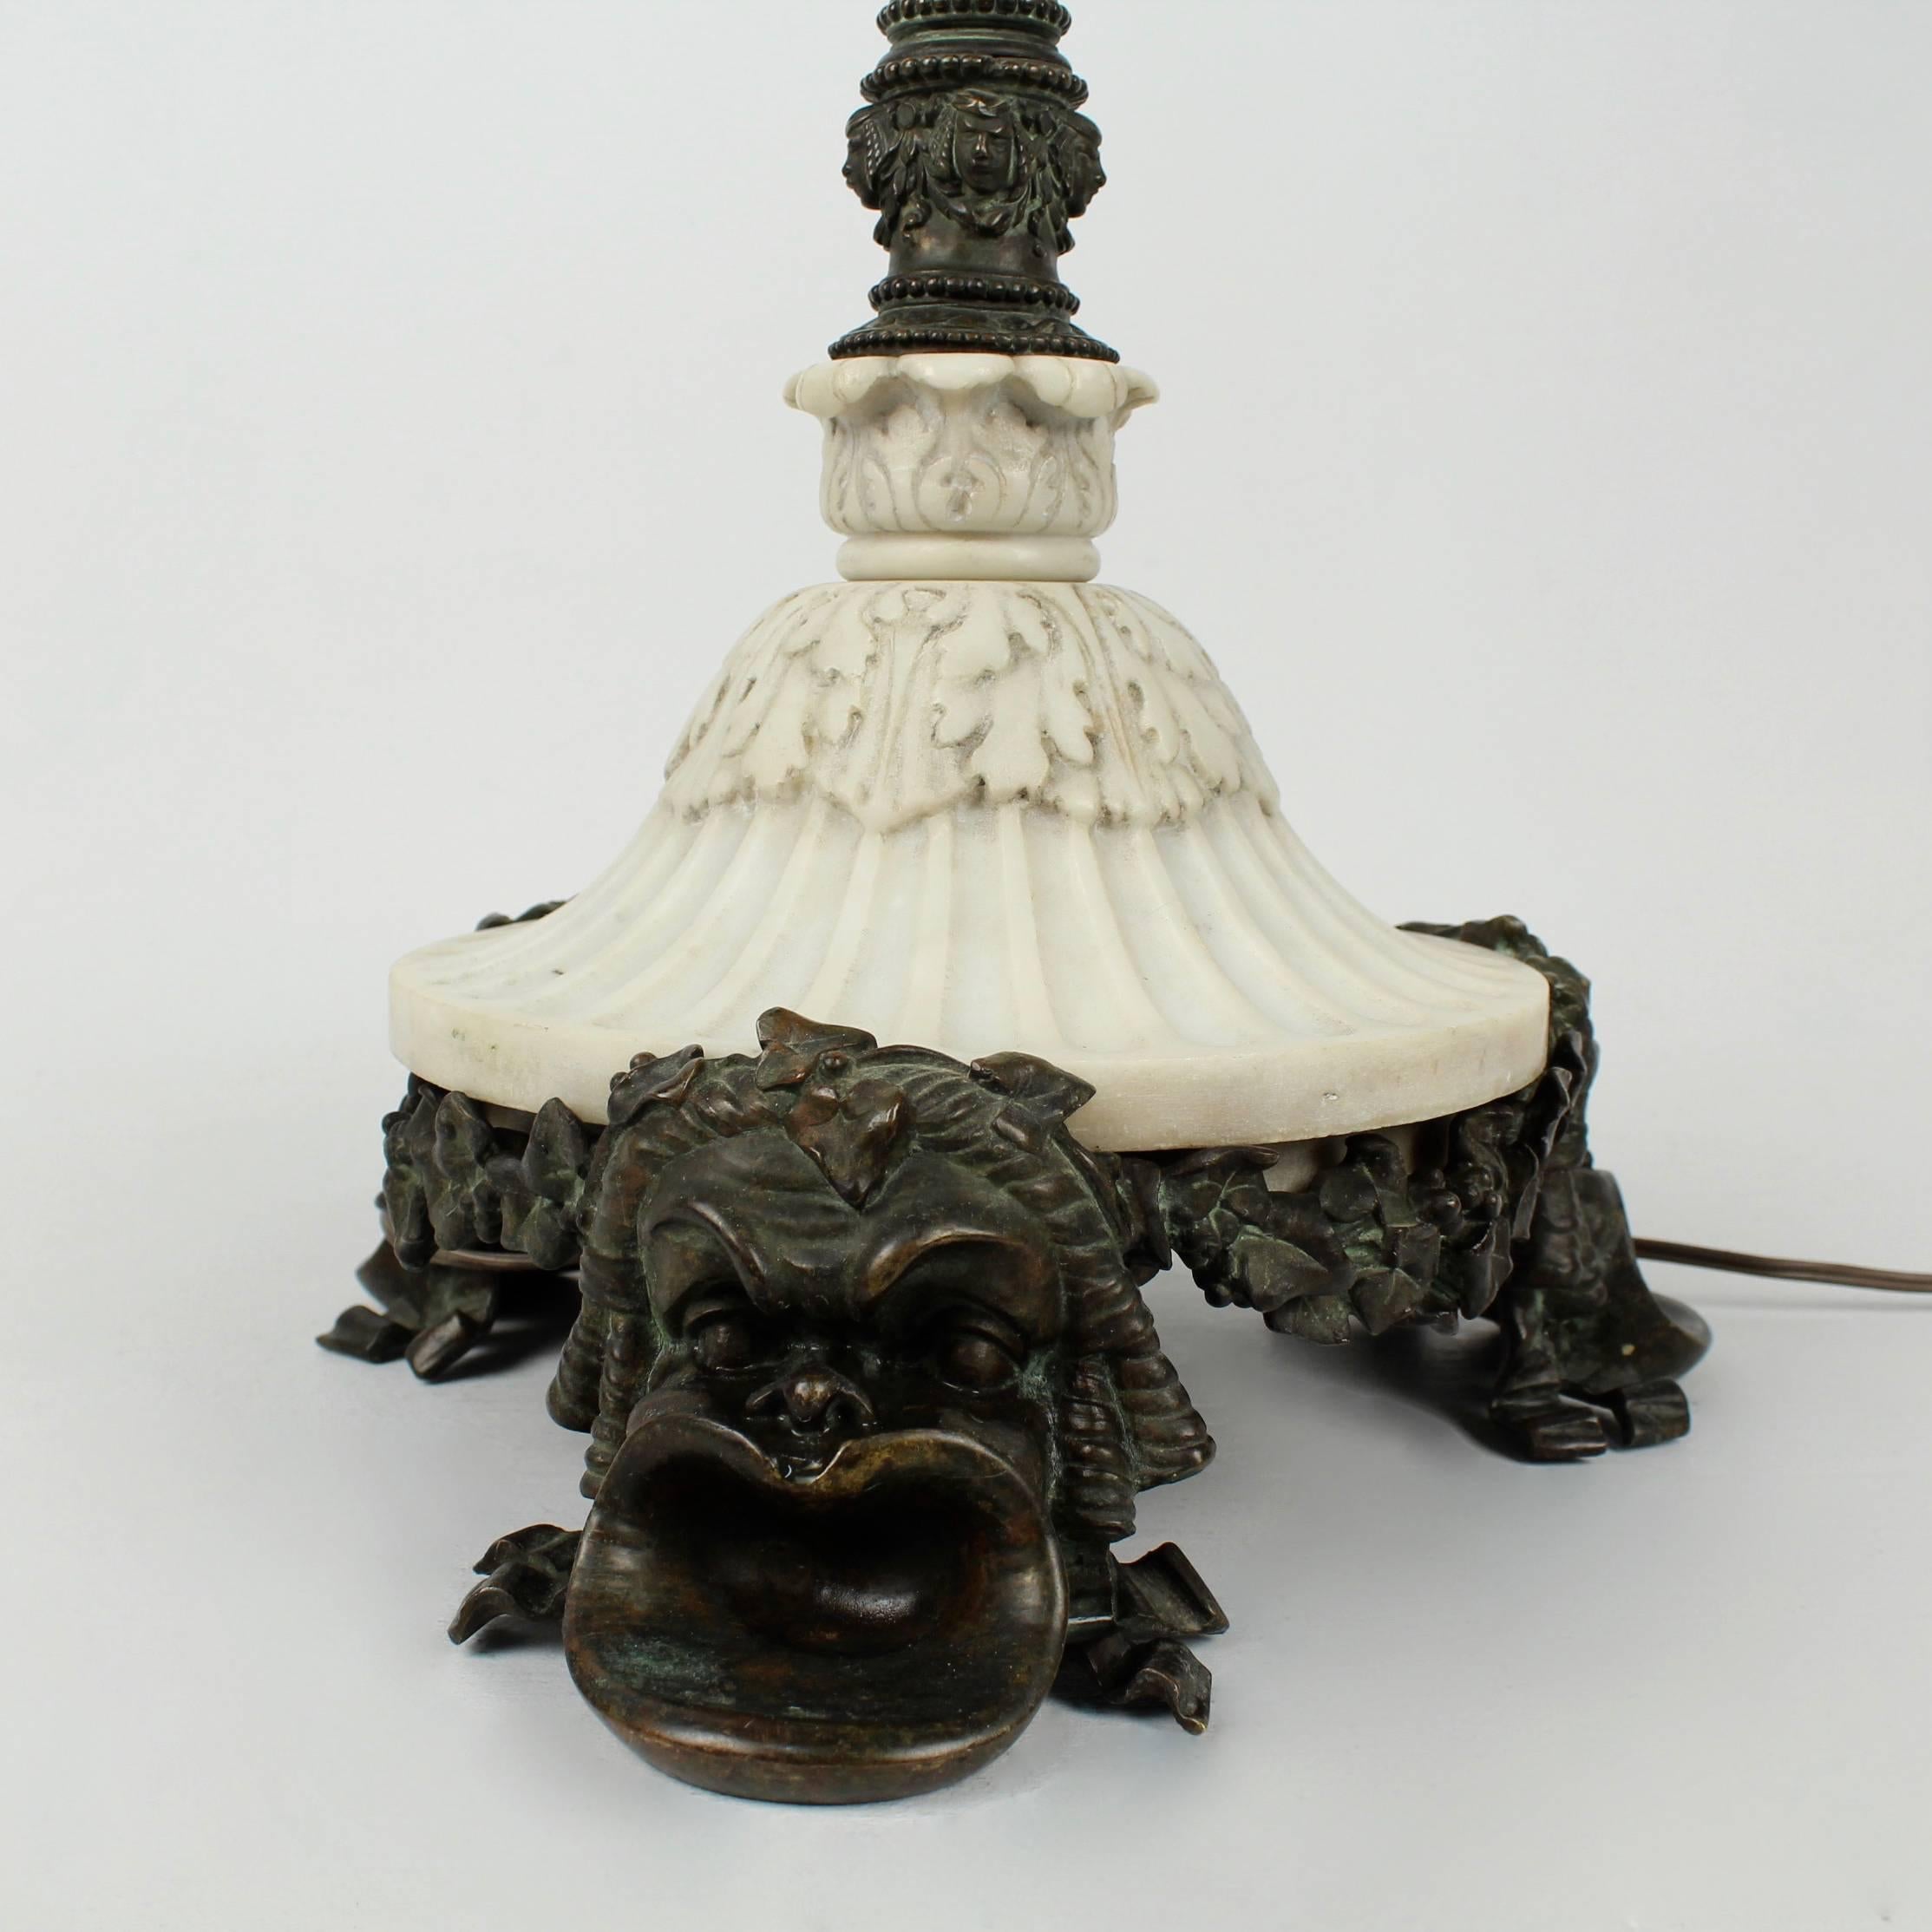 Lampe de table ancienne E. F. Caldwell en bronze et marbre d'une qualité exceptionnelle. 

Des pieds modelés en masques grecs soutiennent une base ronde en marbre blanc sculpté et cannelé, ainsi qu'un piédestal central en bronze moulé pour la